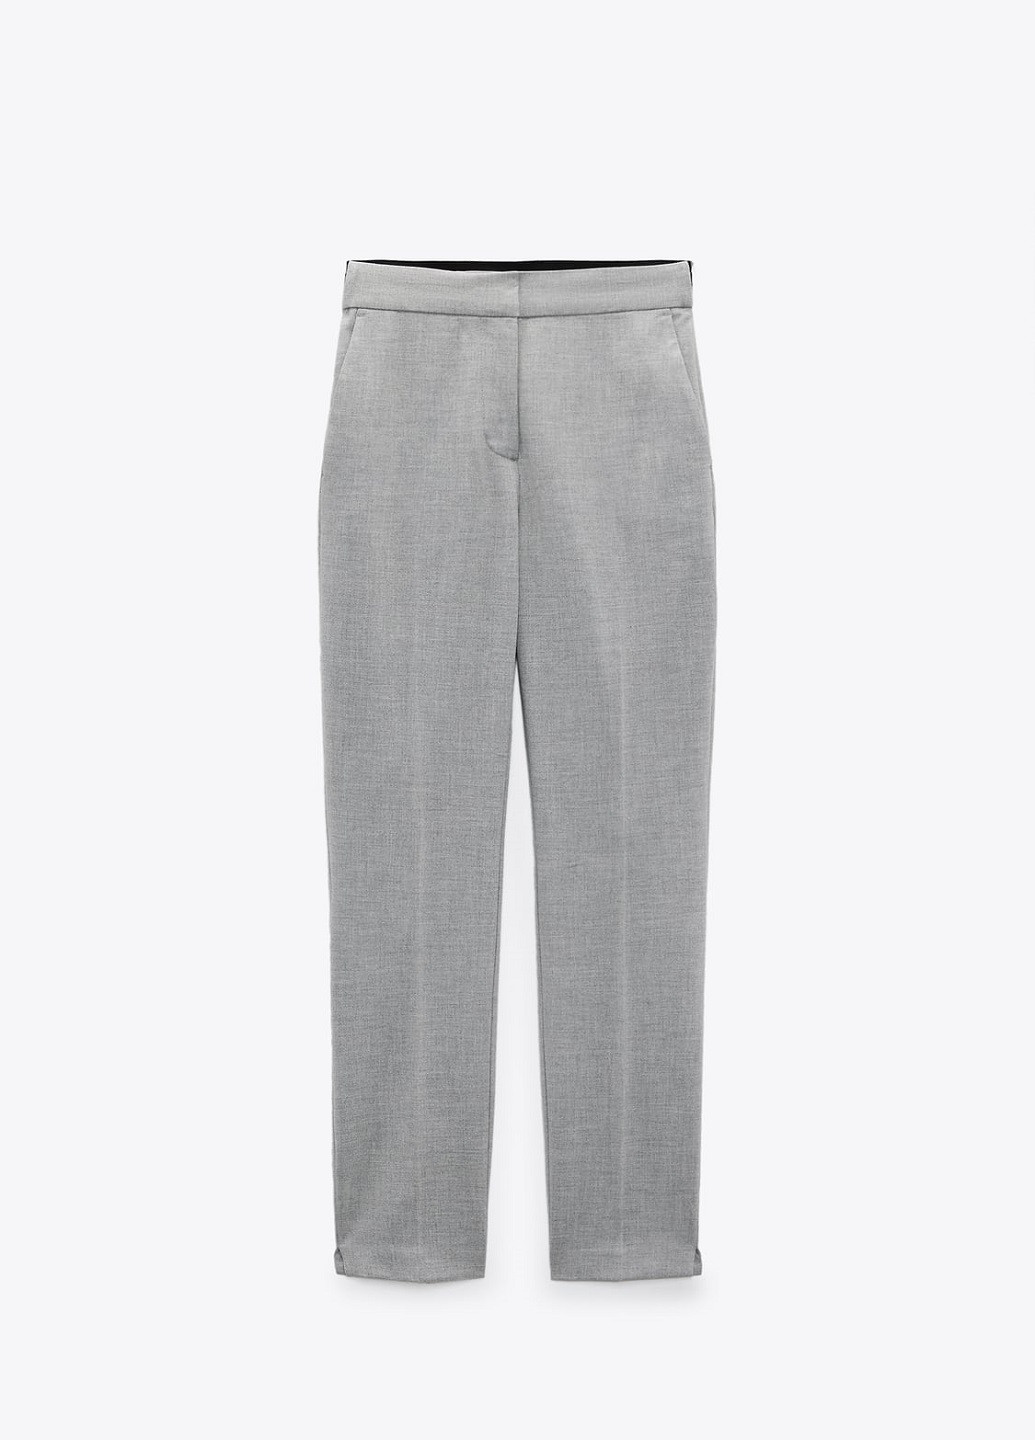 Светло-серые классические демисезонные брюки Zara